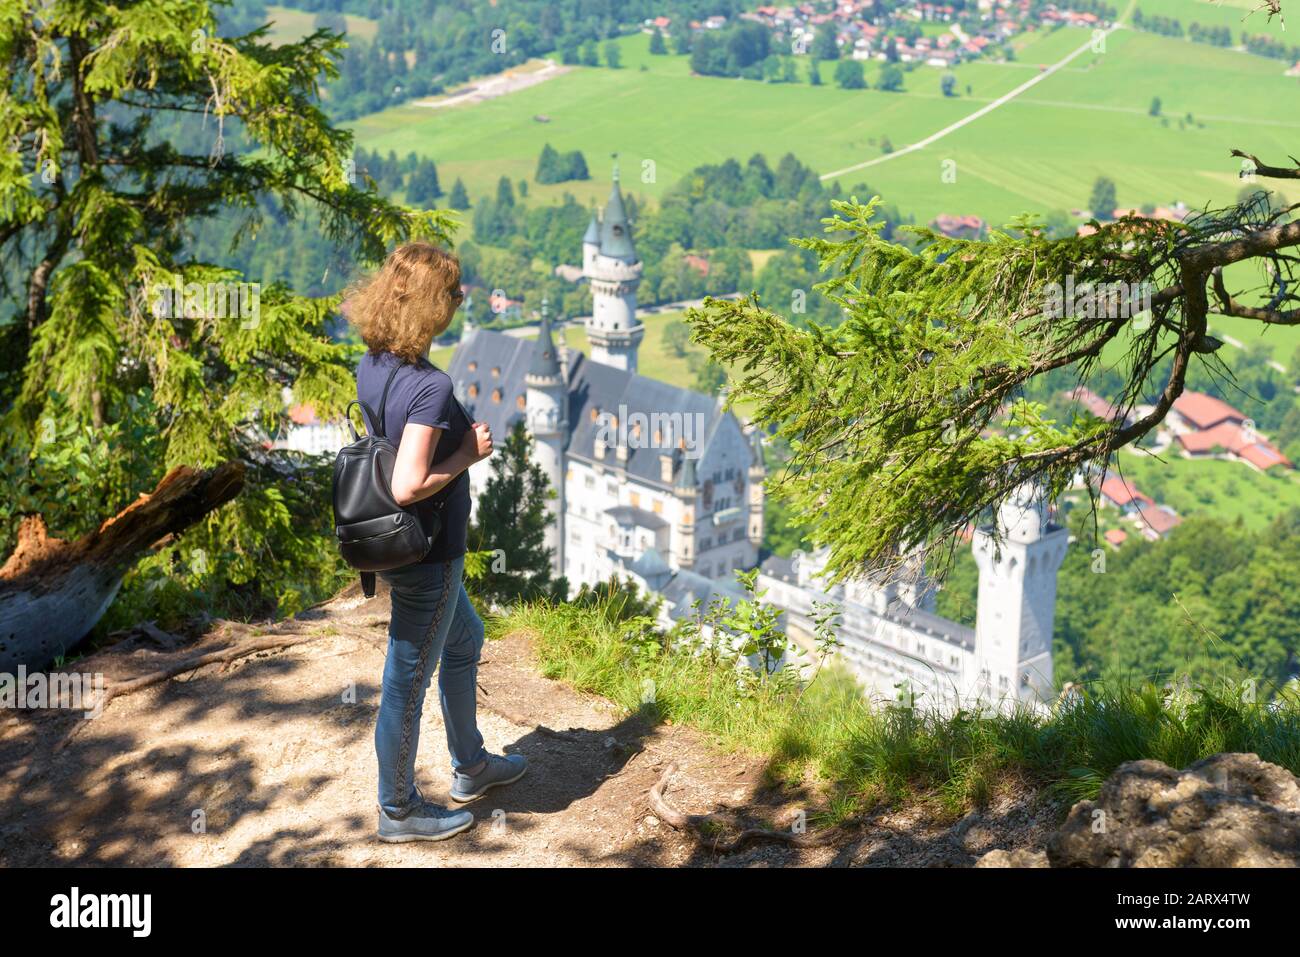 Junge Frau blickt auf Schloss Neuschwanstein, Bayern, Deutschland. Dieses märchenhafte Schloss ist eine Touristenattraktion der deutschen Alpen. Blick auf den berühmten Neuschwanst Stockfoto